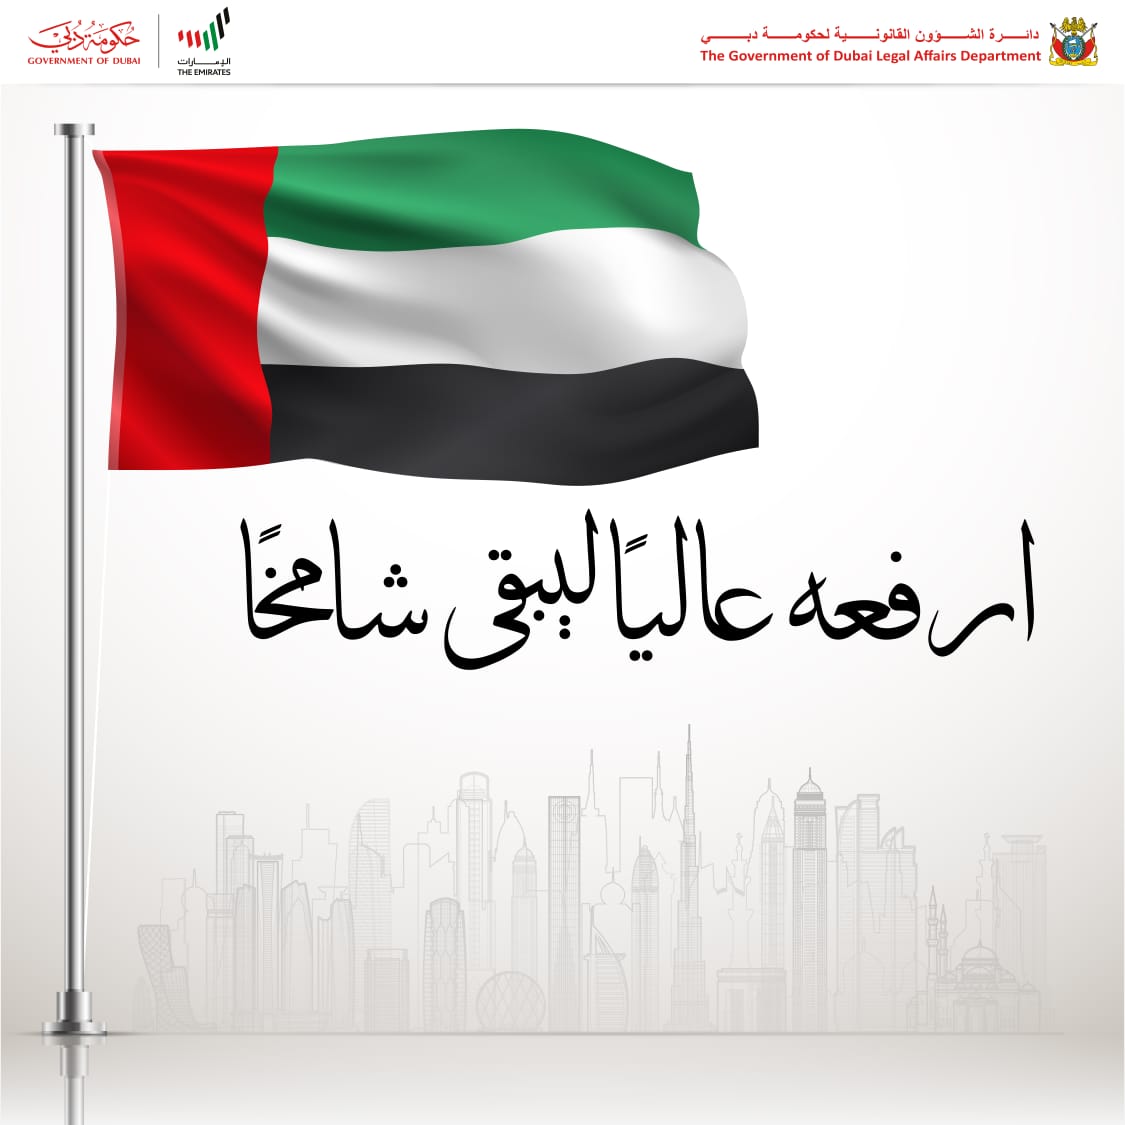 تصريح سعادة مدير عام دائرة الشؤون القانونية لحكومة دبي  بمناسبة يوم العلم